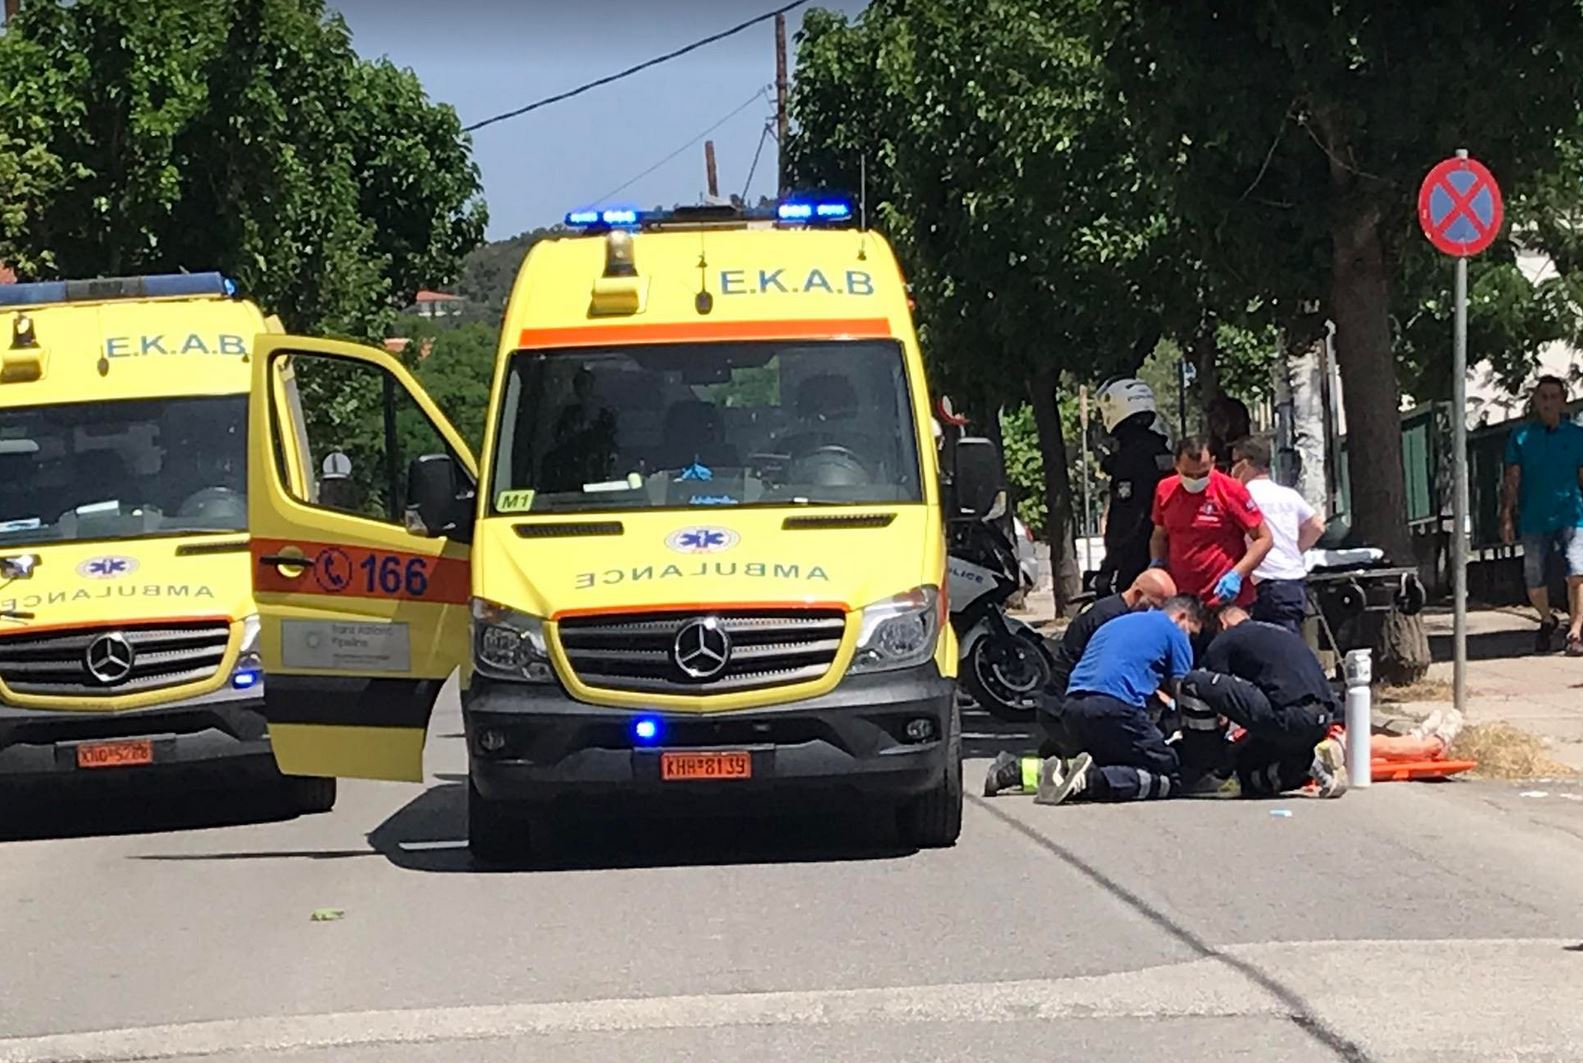 Κοζάνη: Τροχαίο ατύχημα με μαθήτρια - Παρασύρθηκε από αυτοκίνητο (φωτο, video)